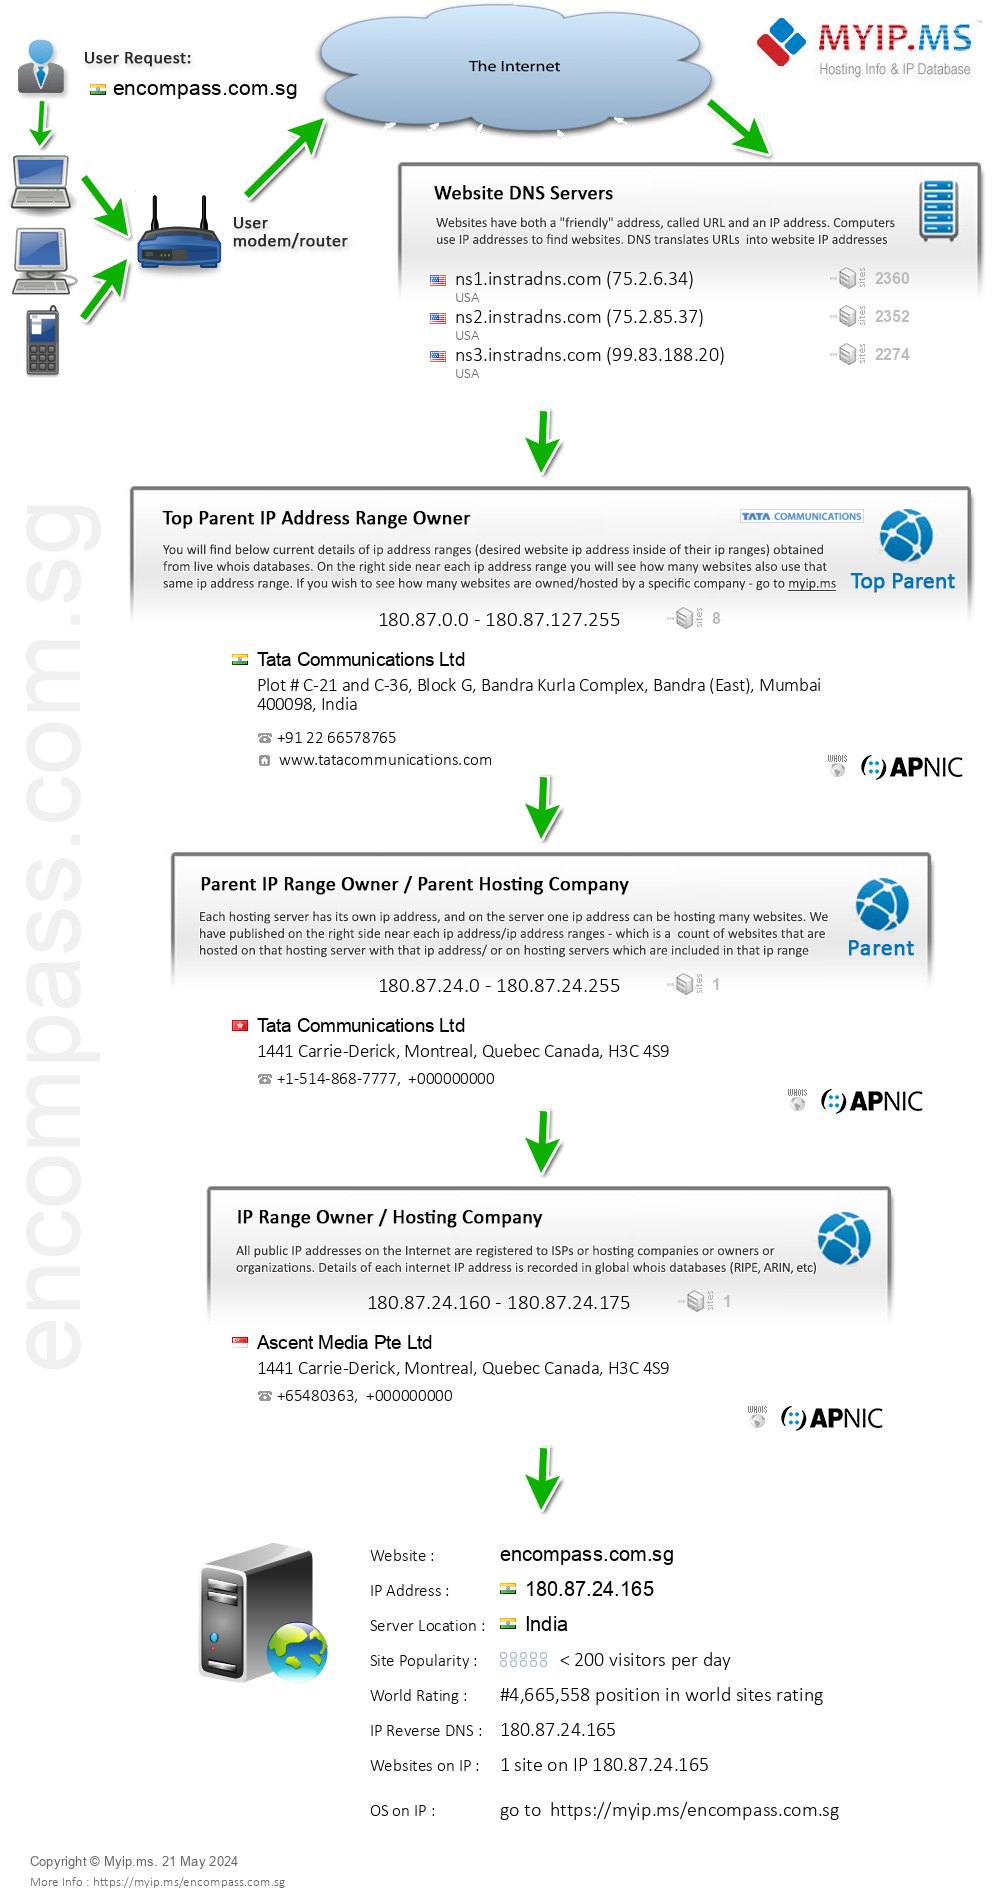 Encompass.com.sg - Website Hosting Visual IP Diagram